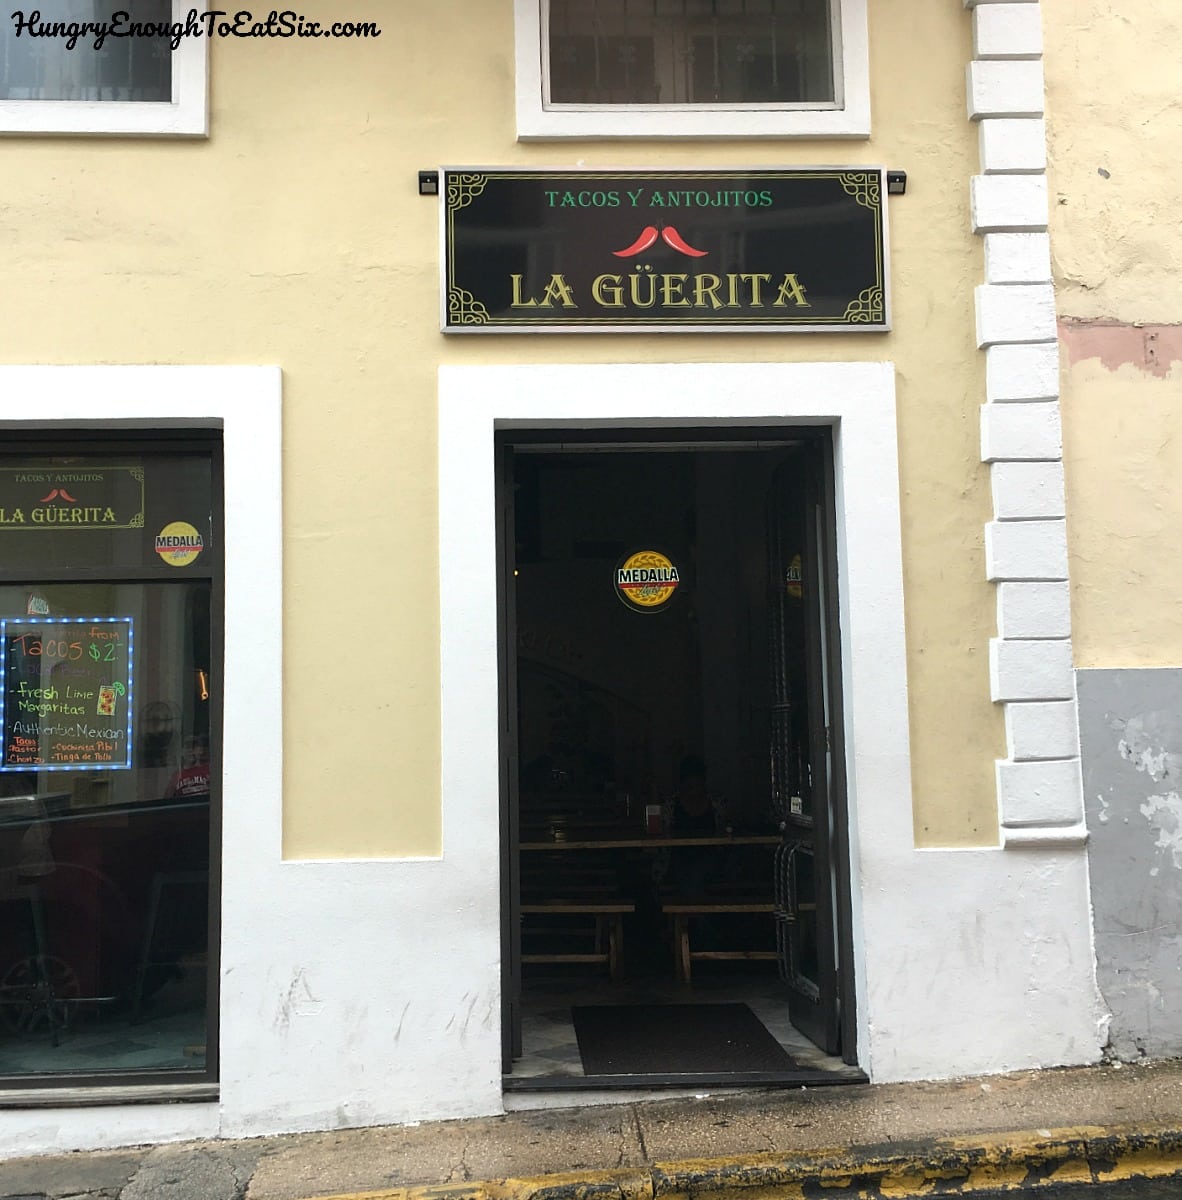 Entrance to La Guerrita bar